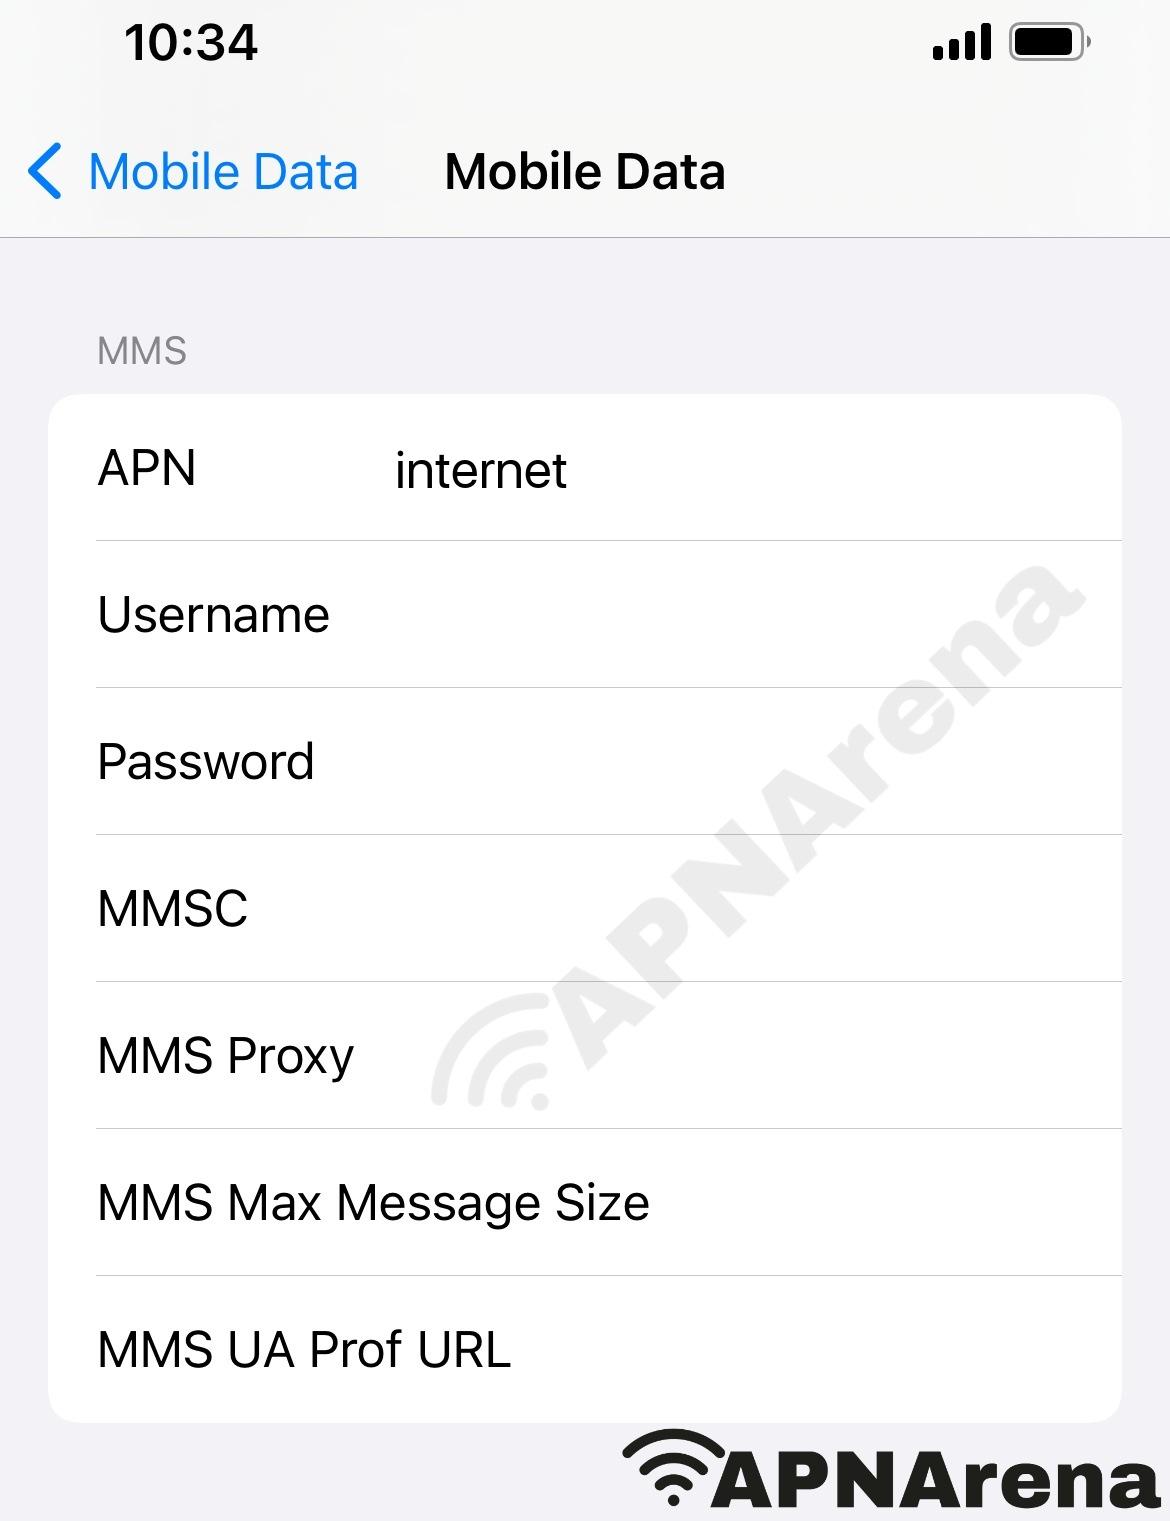 Optimum Mobile MMS Settings for iPhone